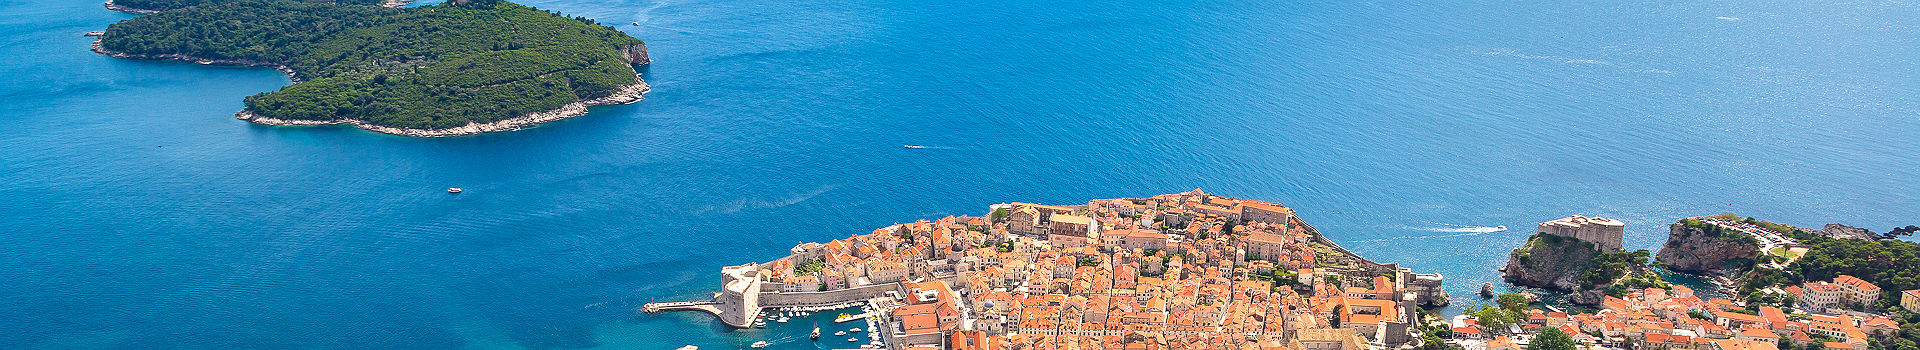 Montenegro - Vue sur la citadelle de Dubrovnik